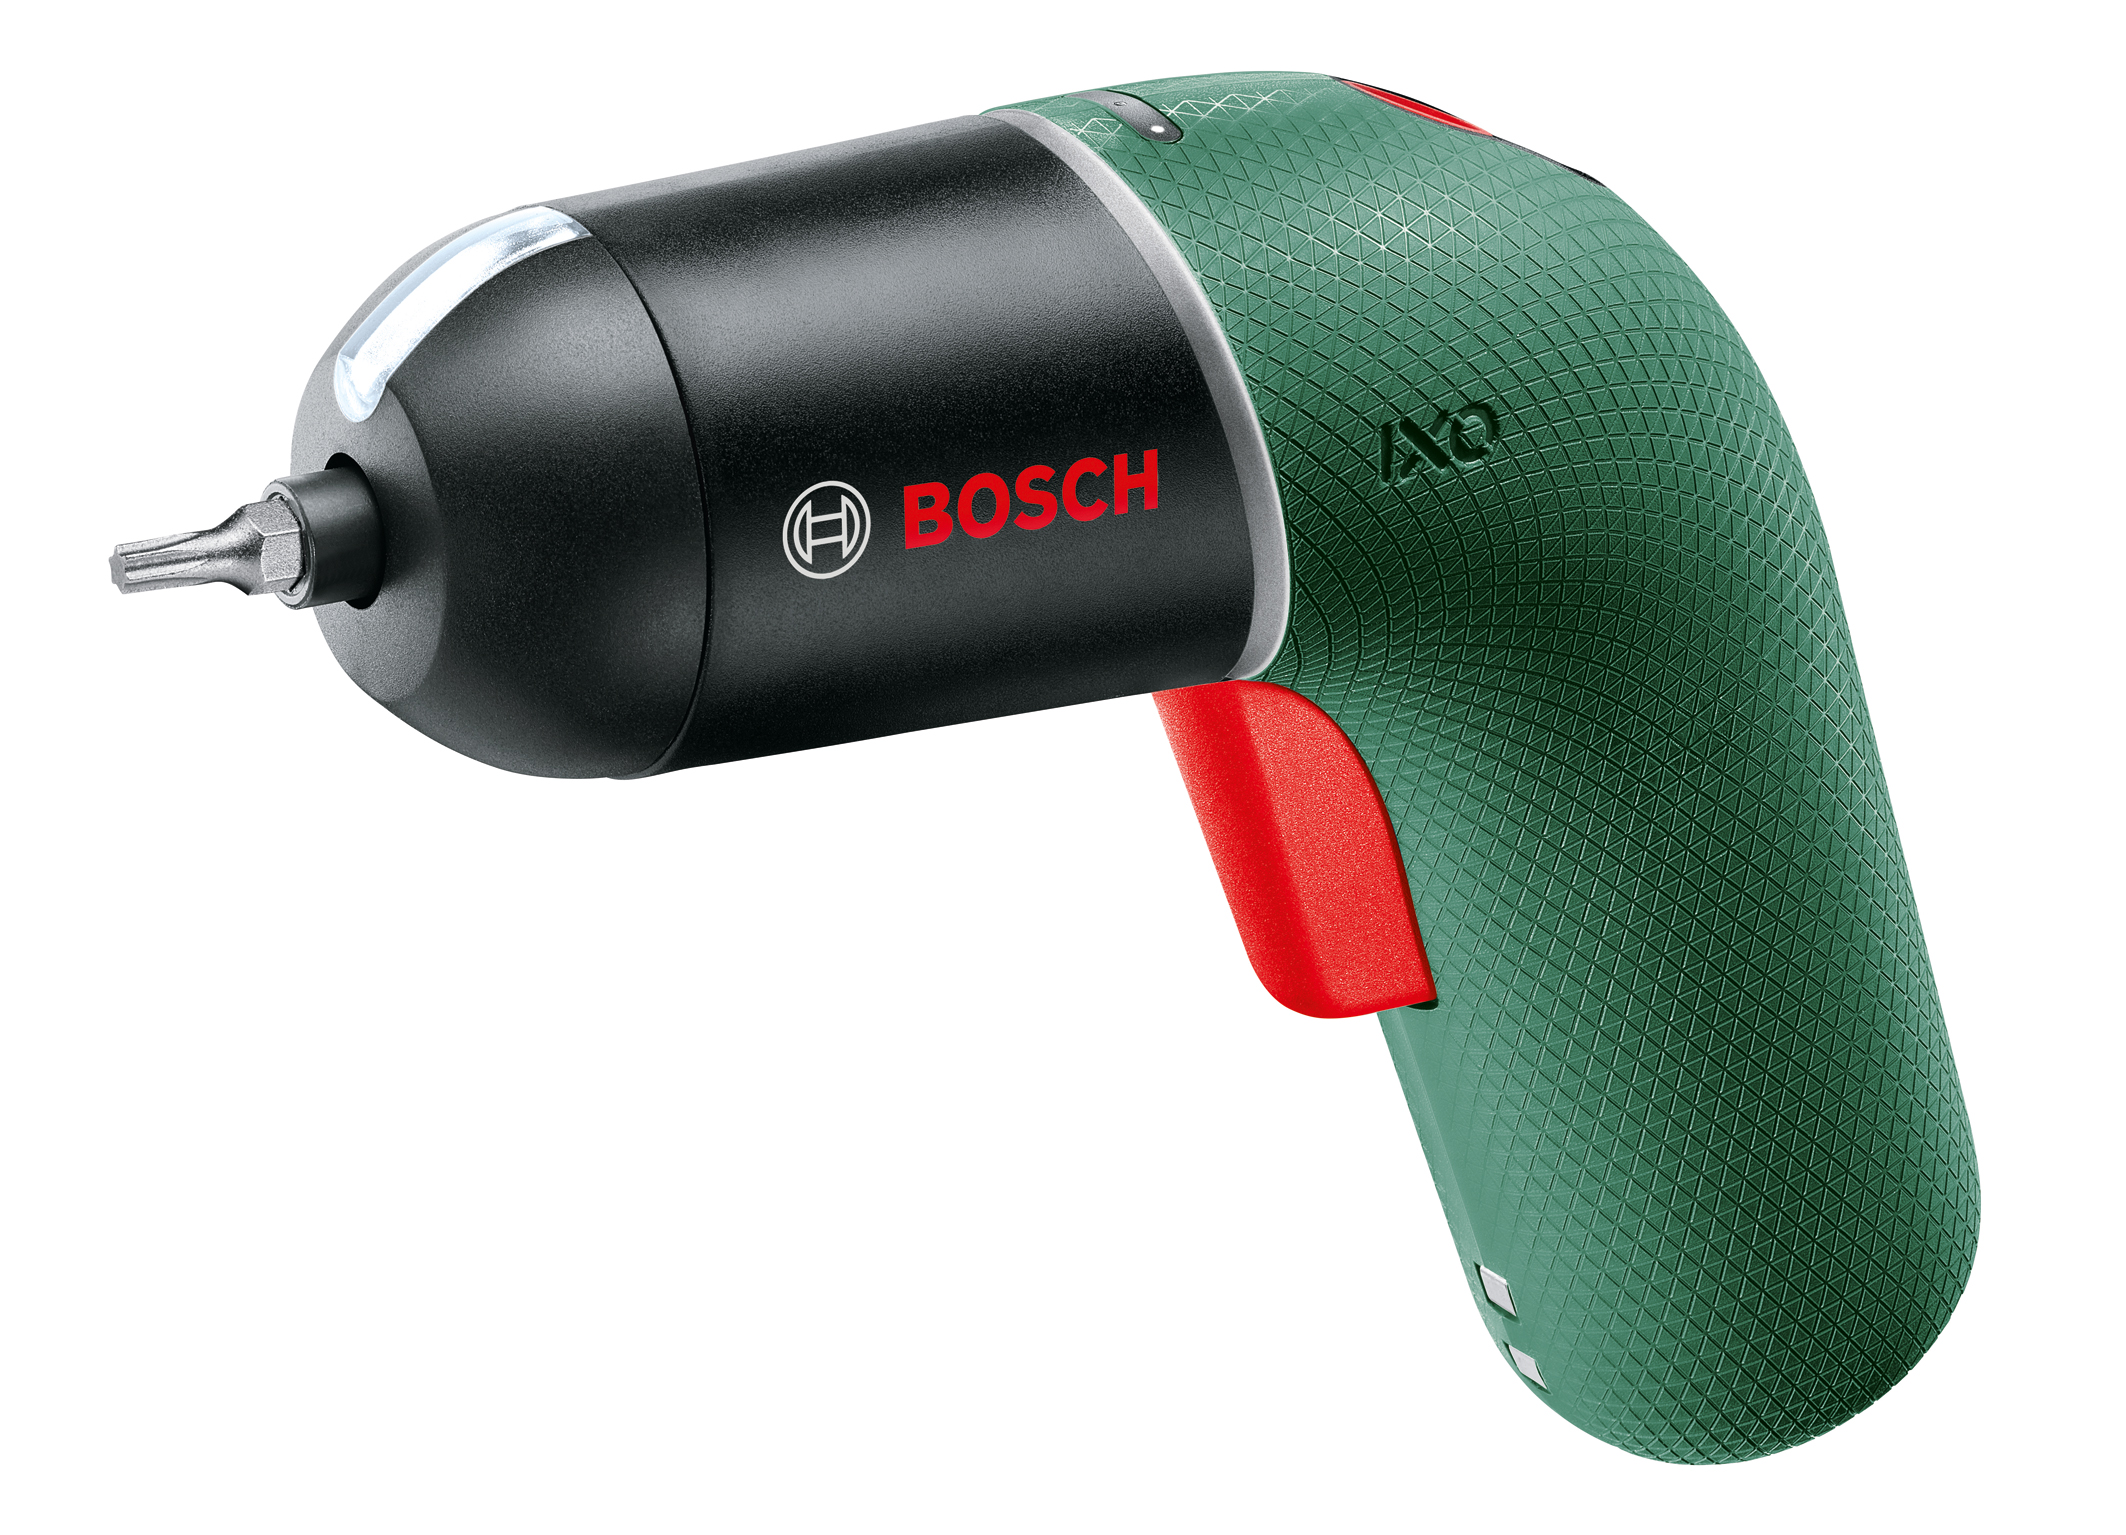 Jetzt wieder im klassischen Bosch-Grün mit roten Bedienelementen: Kultschrauber Ixo Classic ist zurück